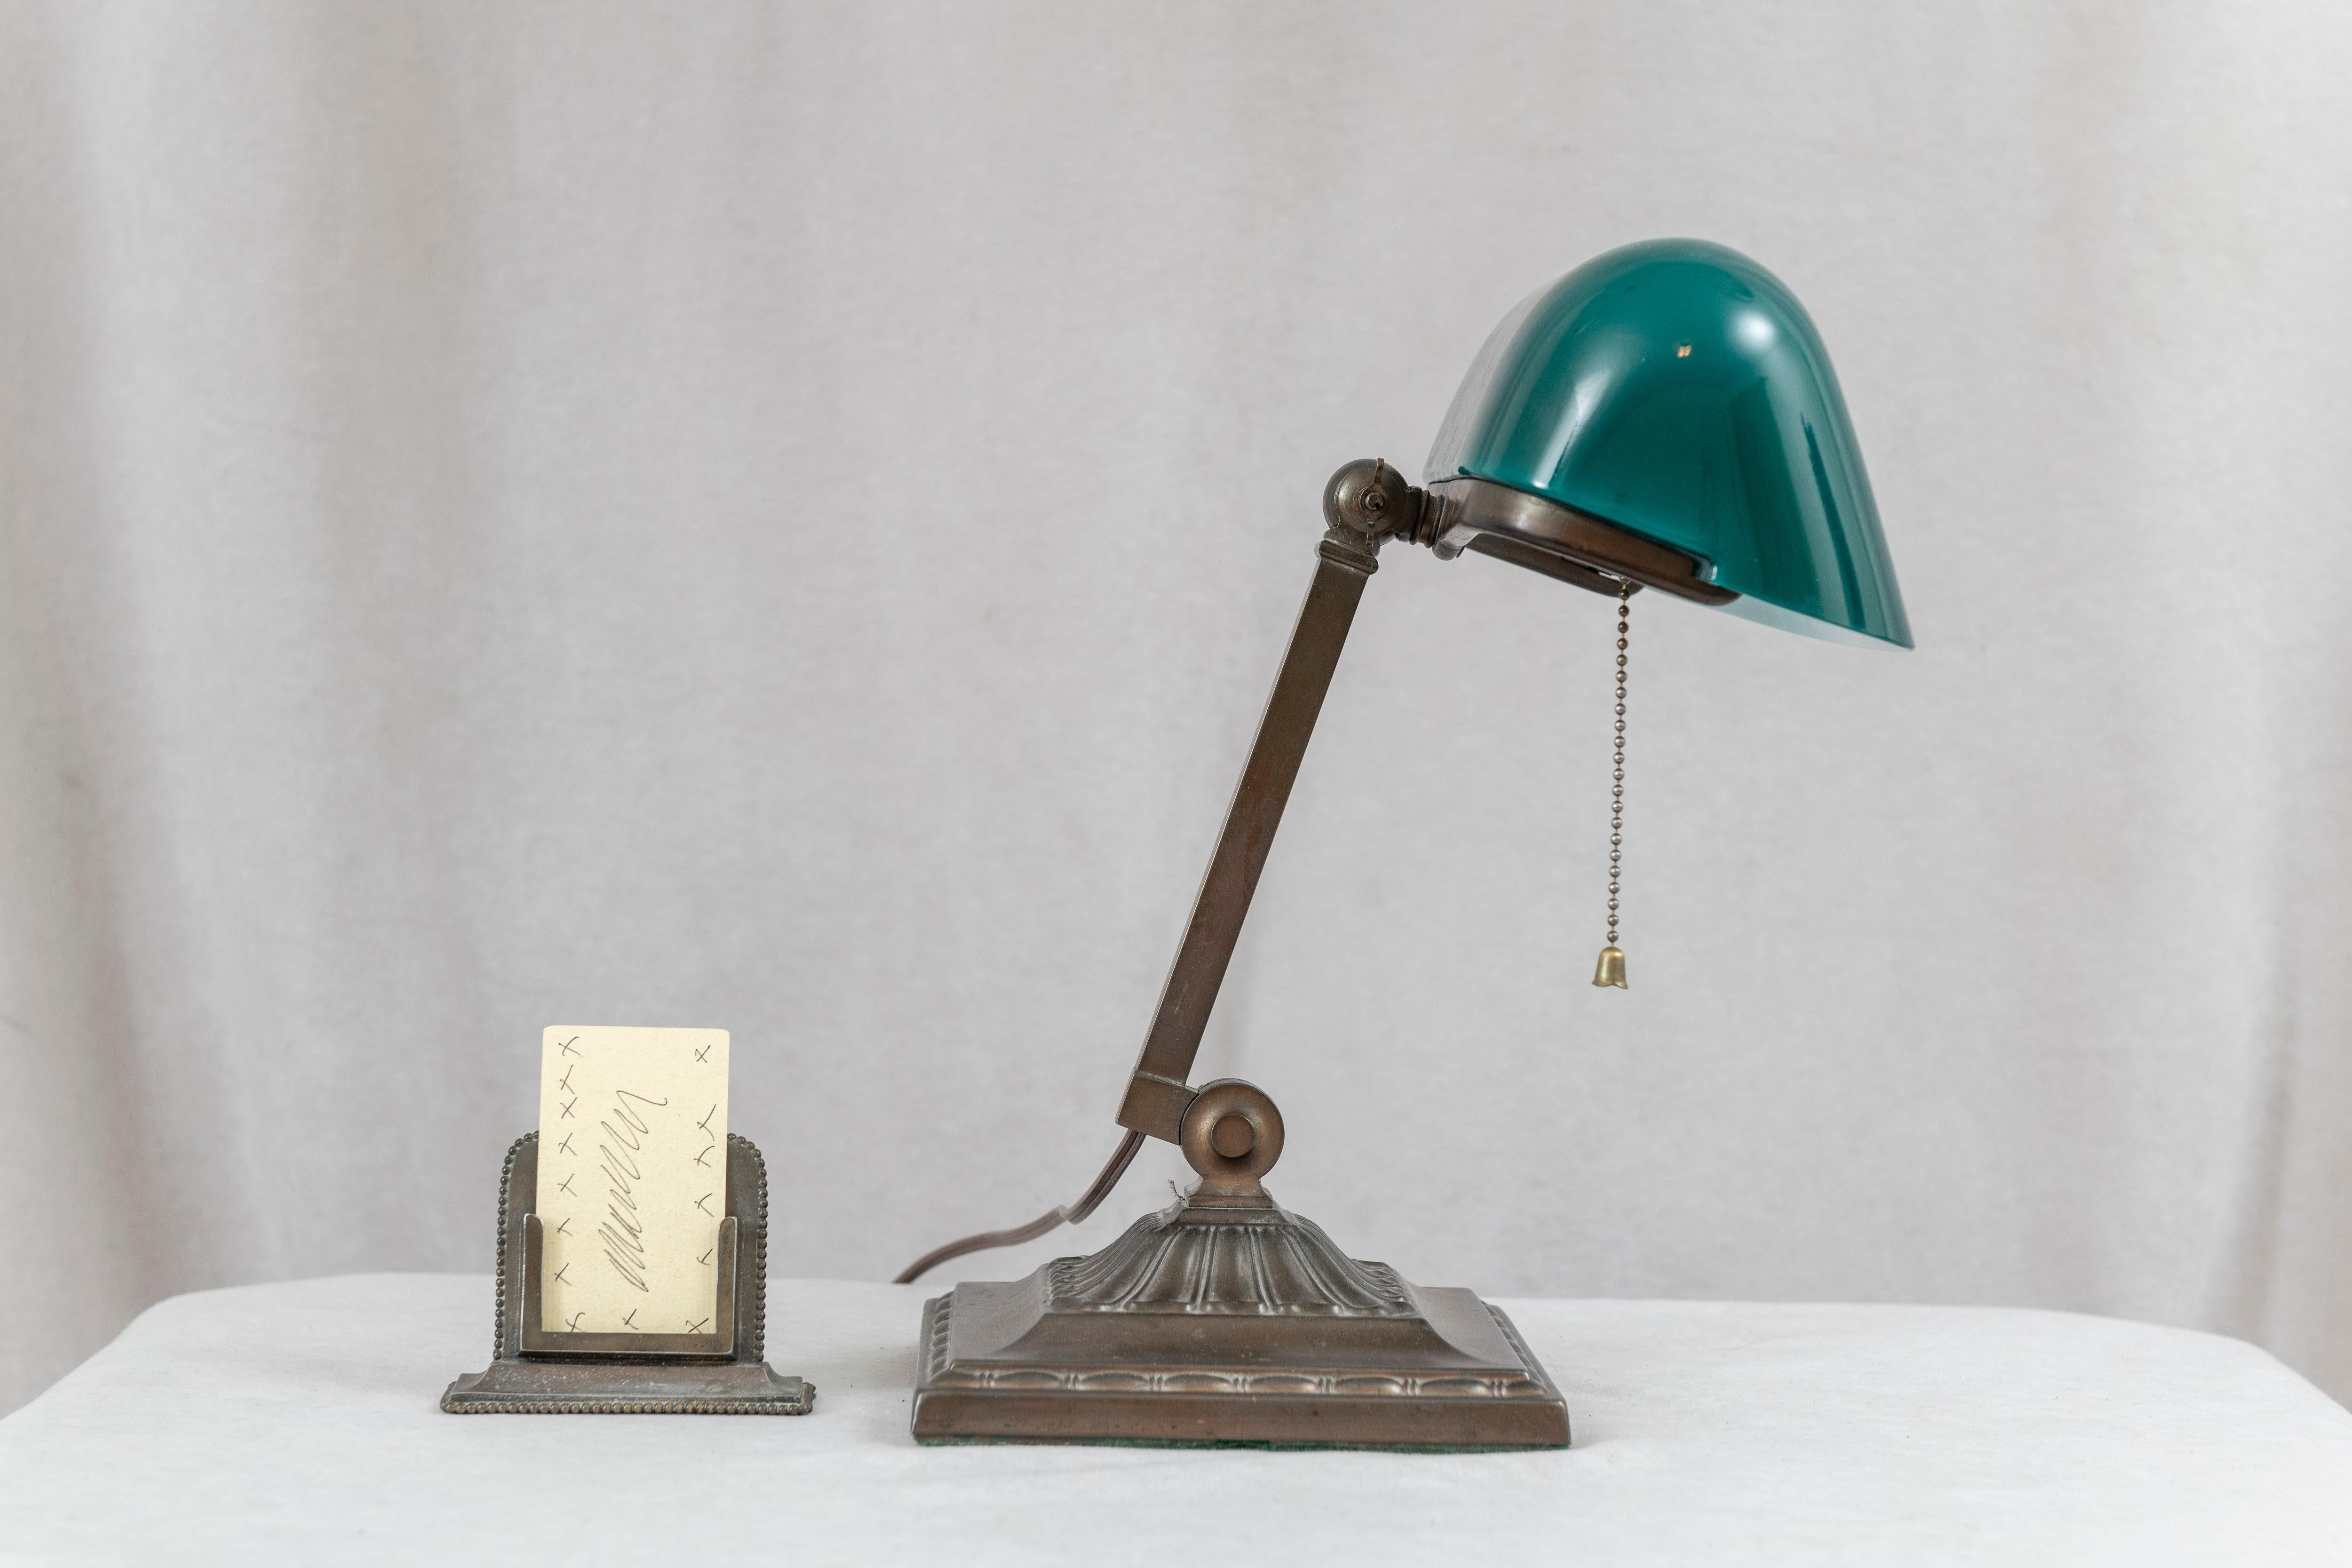  Ein sehr schönes Beispiel des Genres, das als Banker's Lamps bekannt ist. Dieses Exemplar ist von Emeralite, dem berühmtesten Hersteller dieser Lampen, signiert. Der Farbton ist das Original ohne Beschädigung. Diese Lampenschirme wurden aus 2